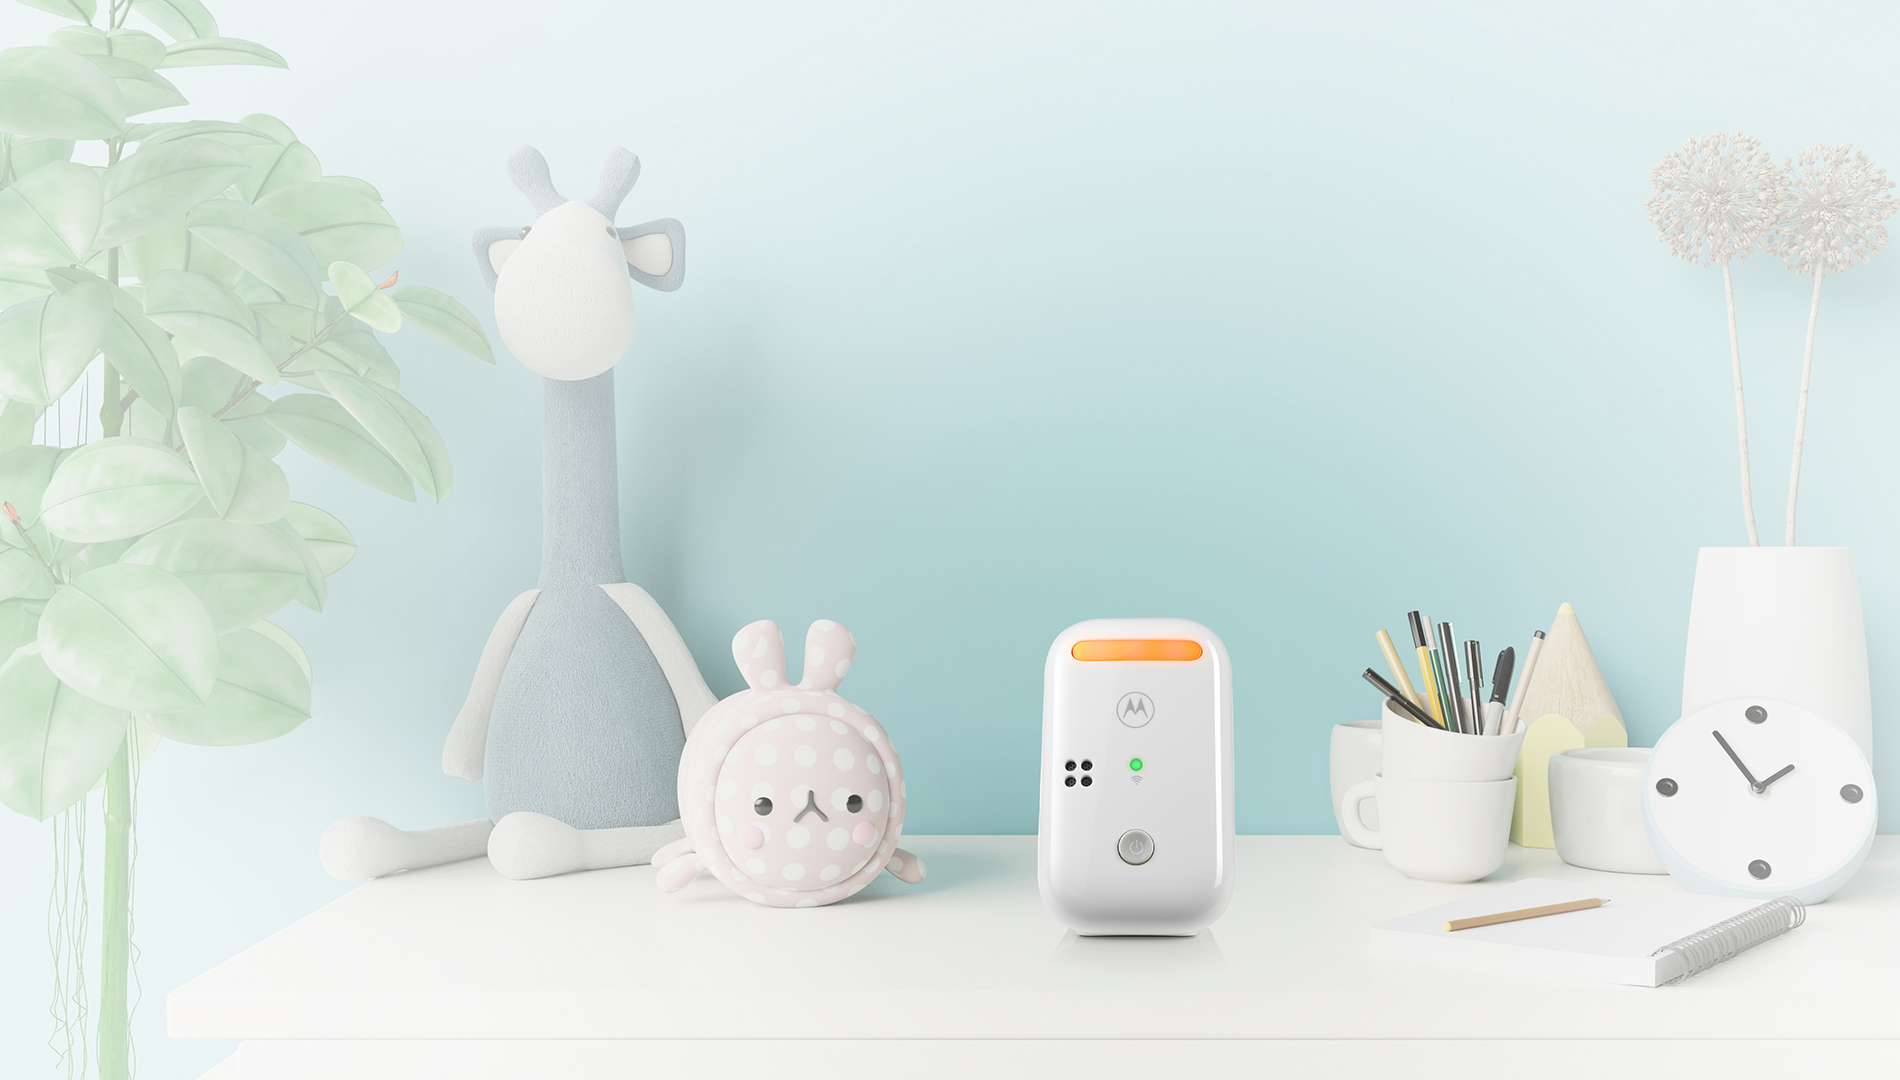 Motorola Nursery  PIP11 Audio Baby Monitor with night light